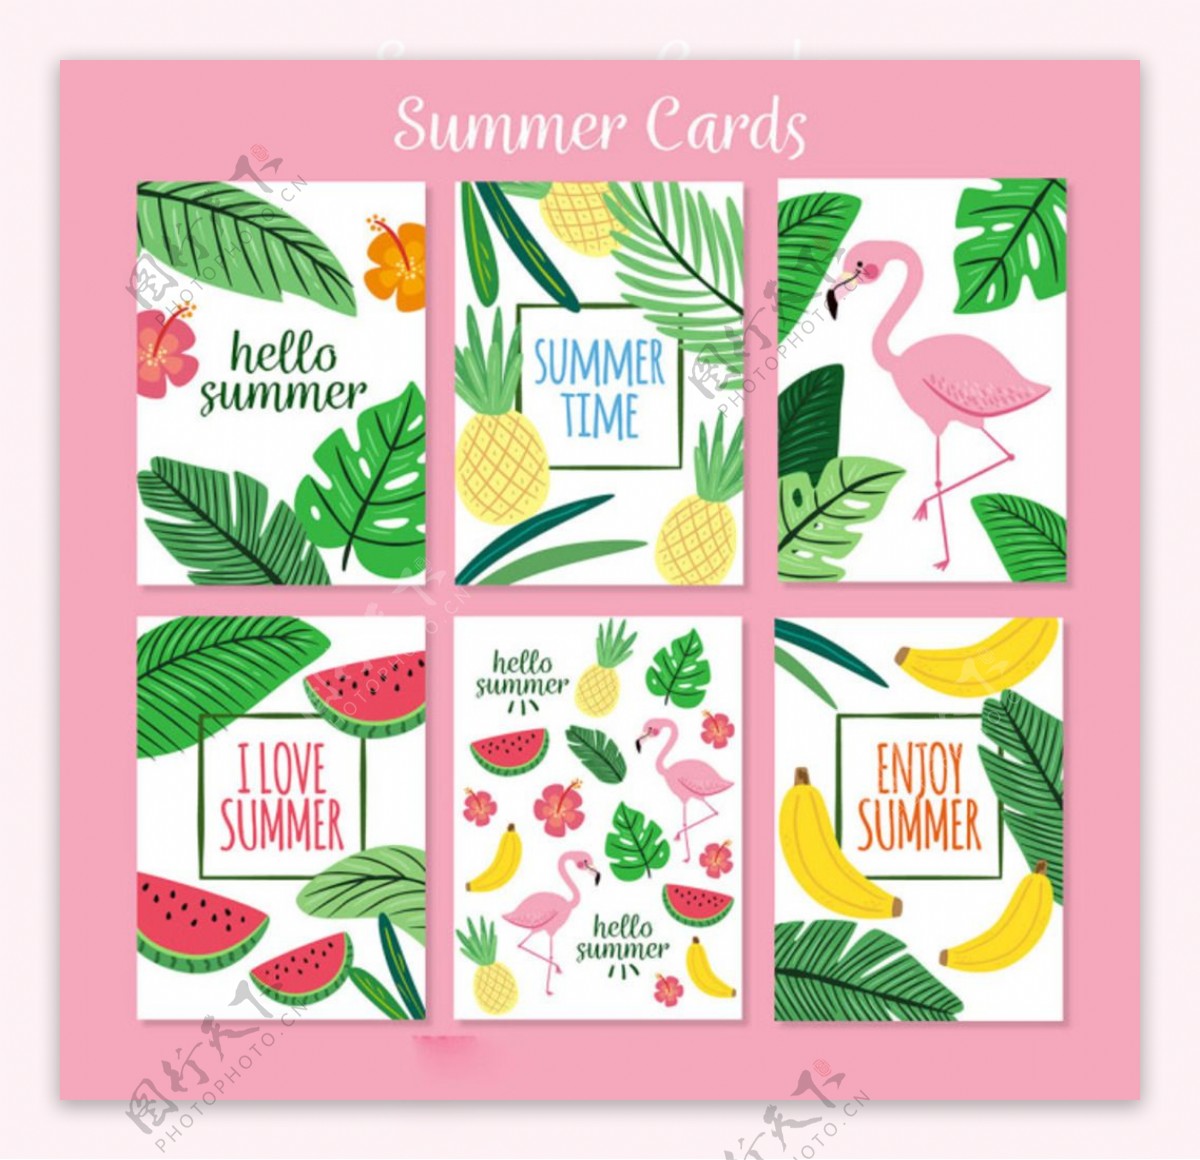 水果植物叶子装饰图案夏季卡片